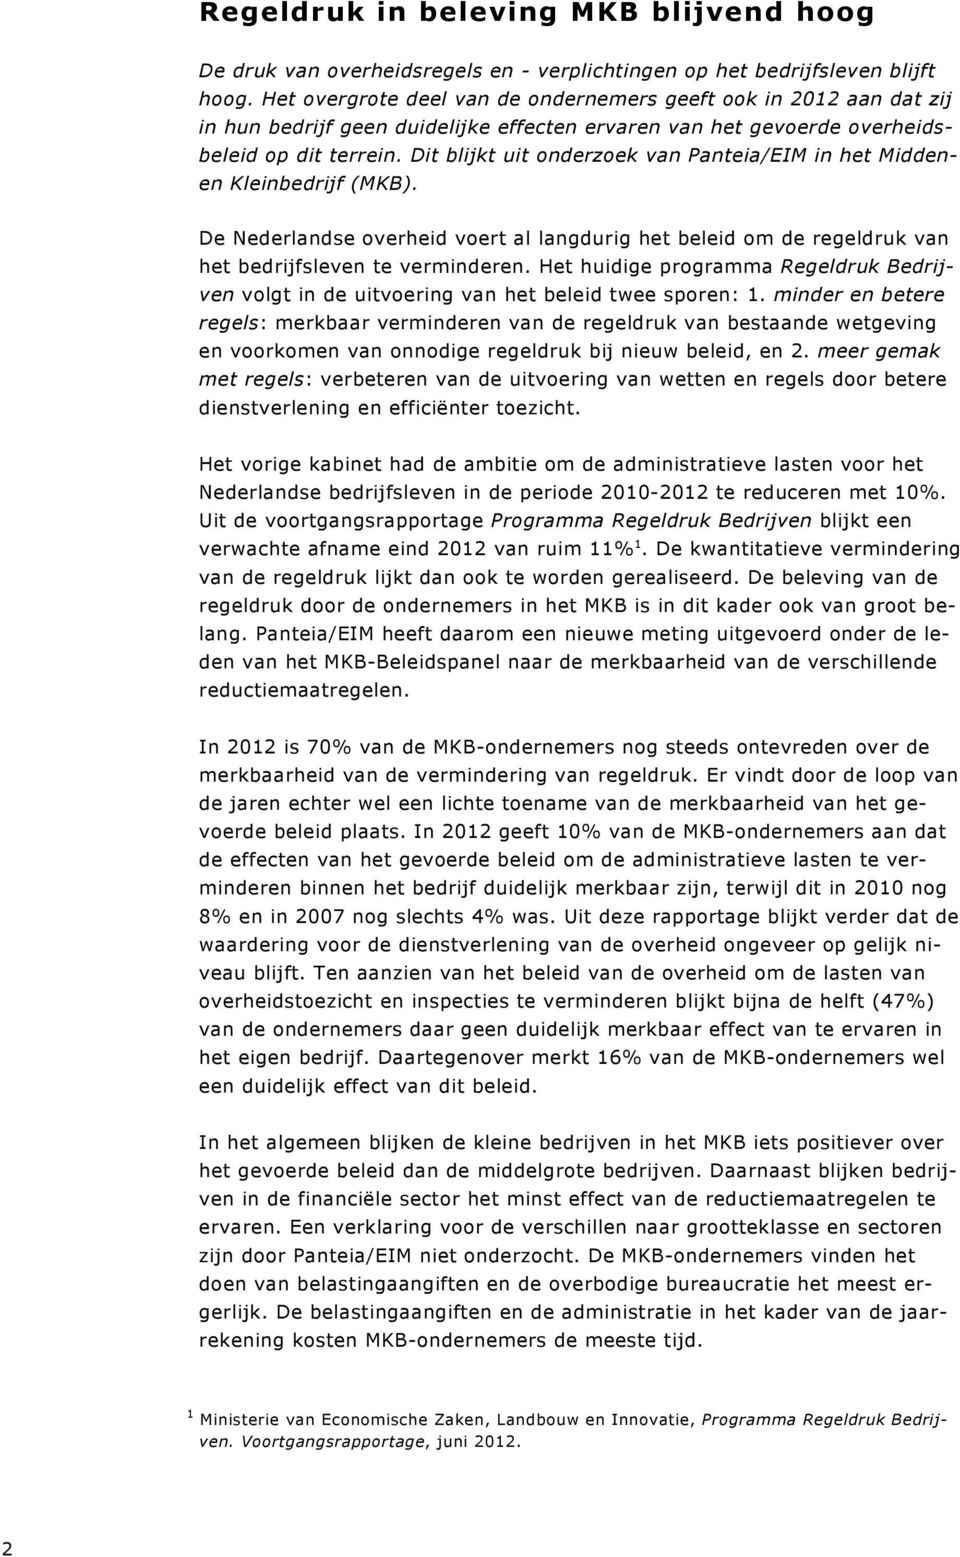 Dit blijkt uit onderzoek van Panteia/EIM in het Middenen Kleinbedrijf (MKB). De Nederlandse overheid voert al langdurig het beleid om de regeldruk van het bedrijfsleven te verminderen.